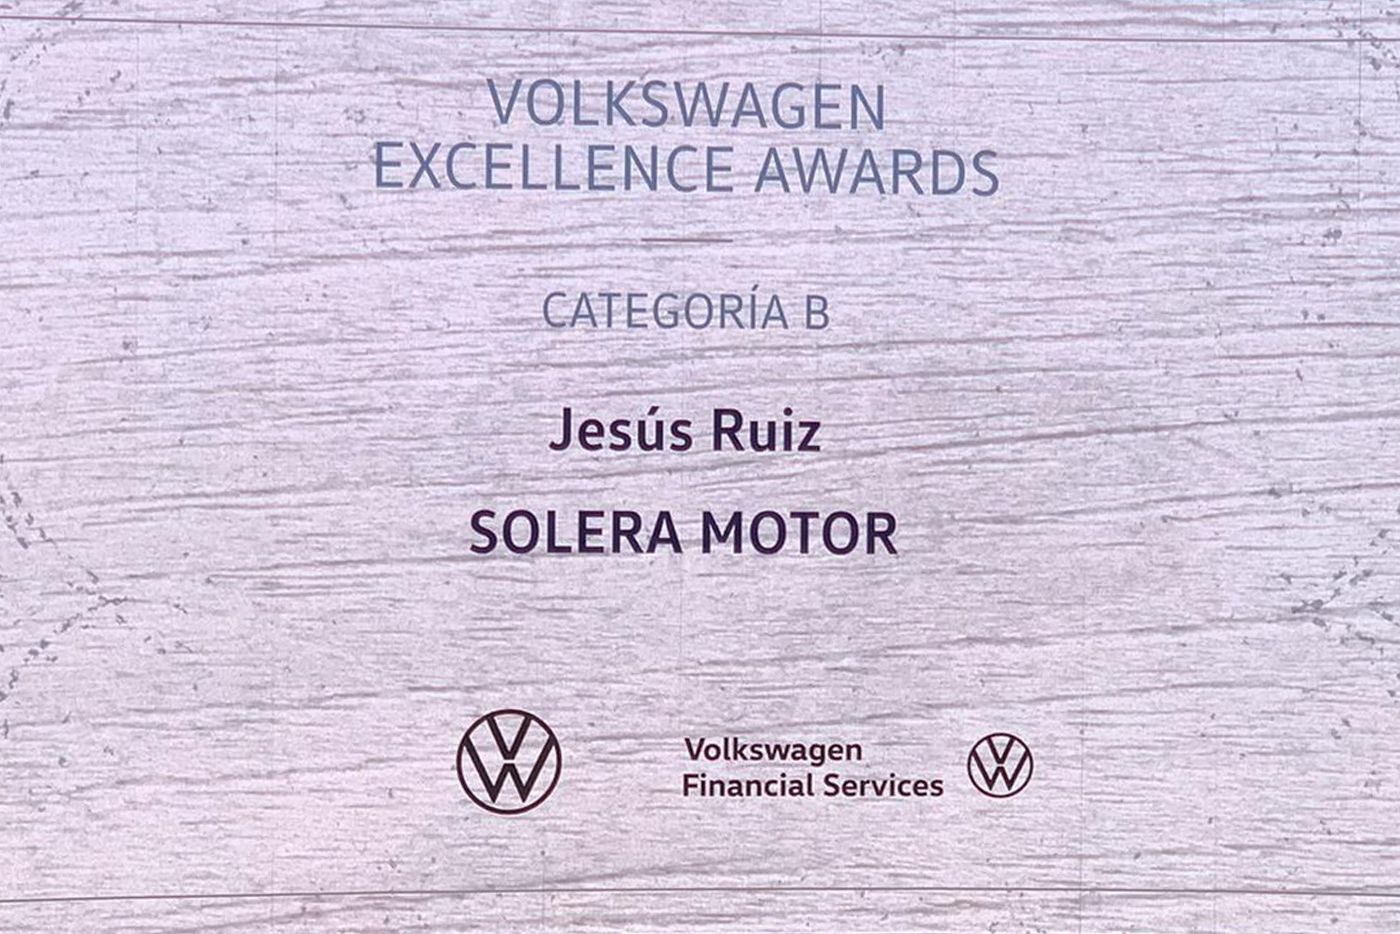 Solera Motor Volkswagen turismos vuelve a ser galardonado Volkswagen Excellence Awards